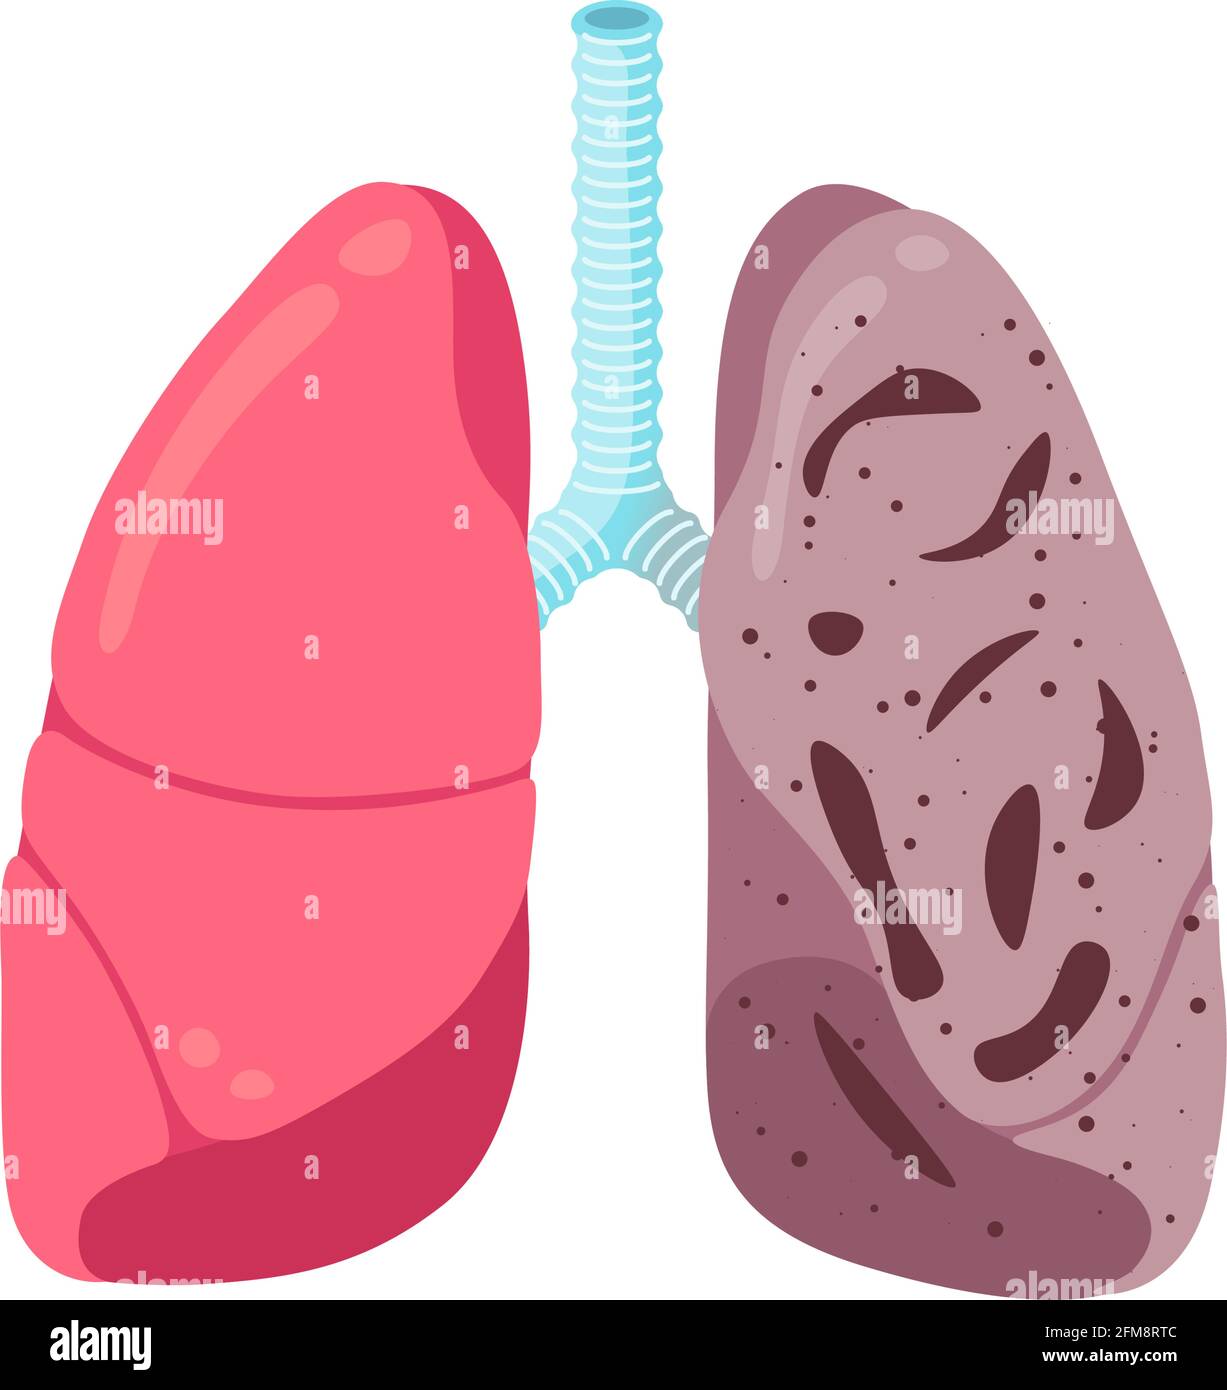 Krank ungesunde Lungen Tuberkulose-Infektion Krankheit. Infektion mit internem Organtubercle Bacillus des menschlichen Atmungssystems oder Lungenentzündung. Medizinische Anatomie Entzündungsschäden Vektor Illusrtation Stock Vektor